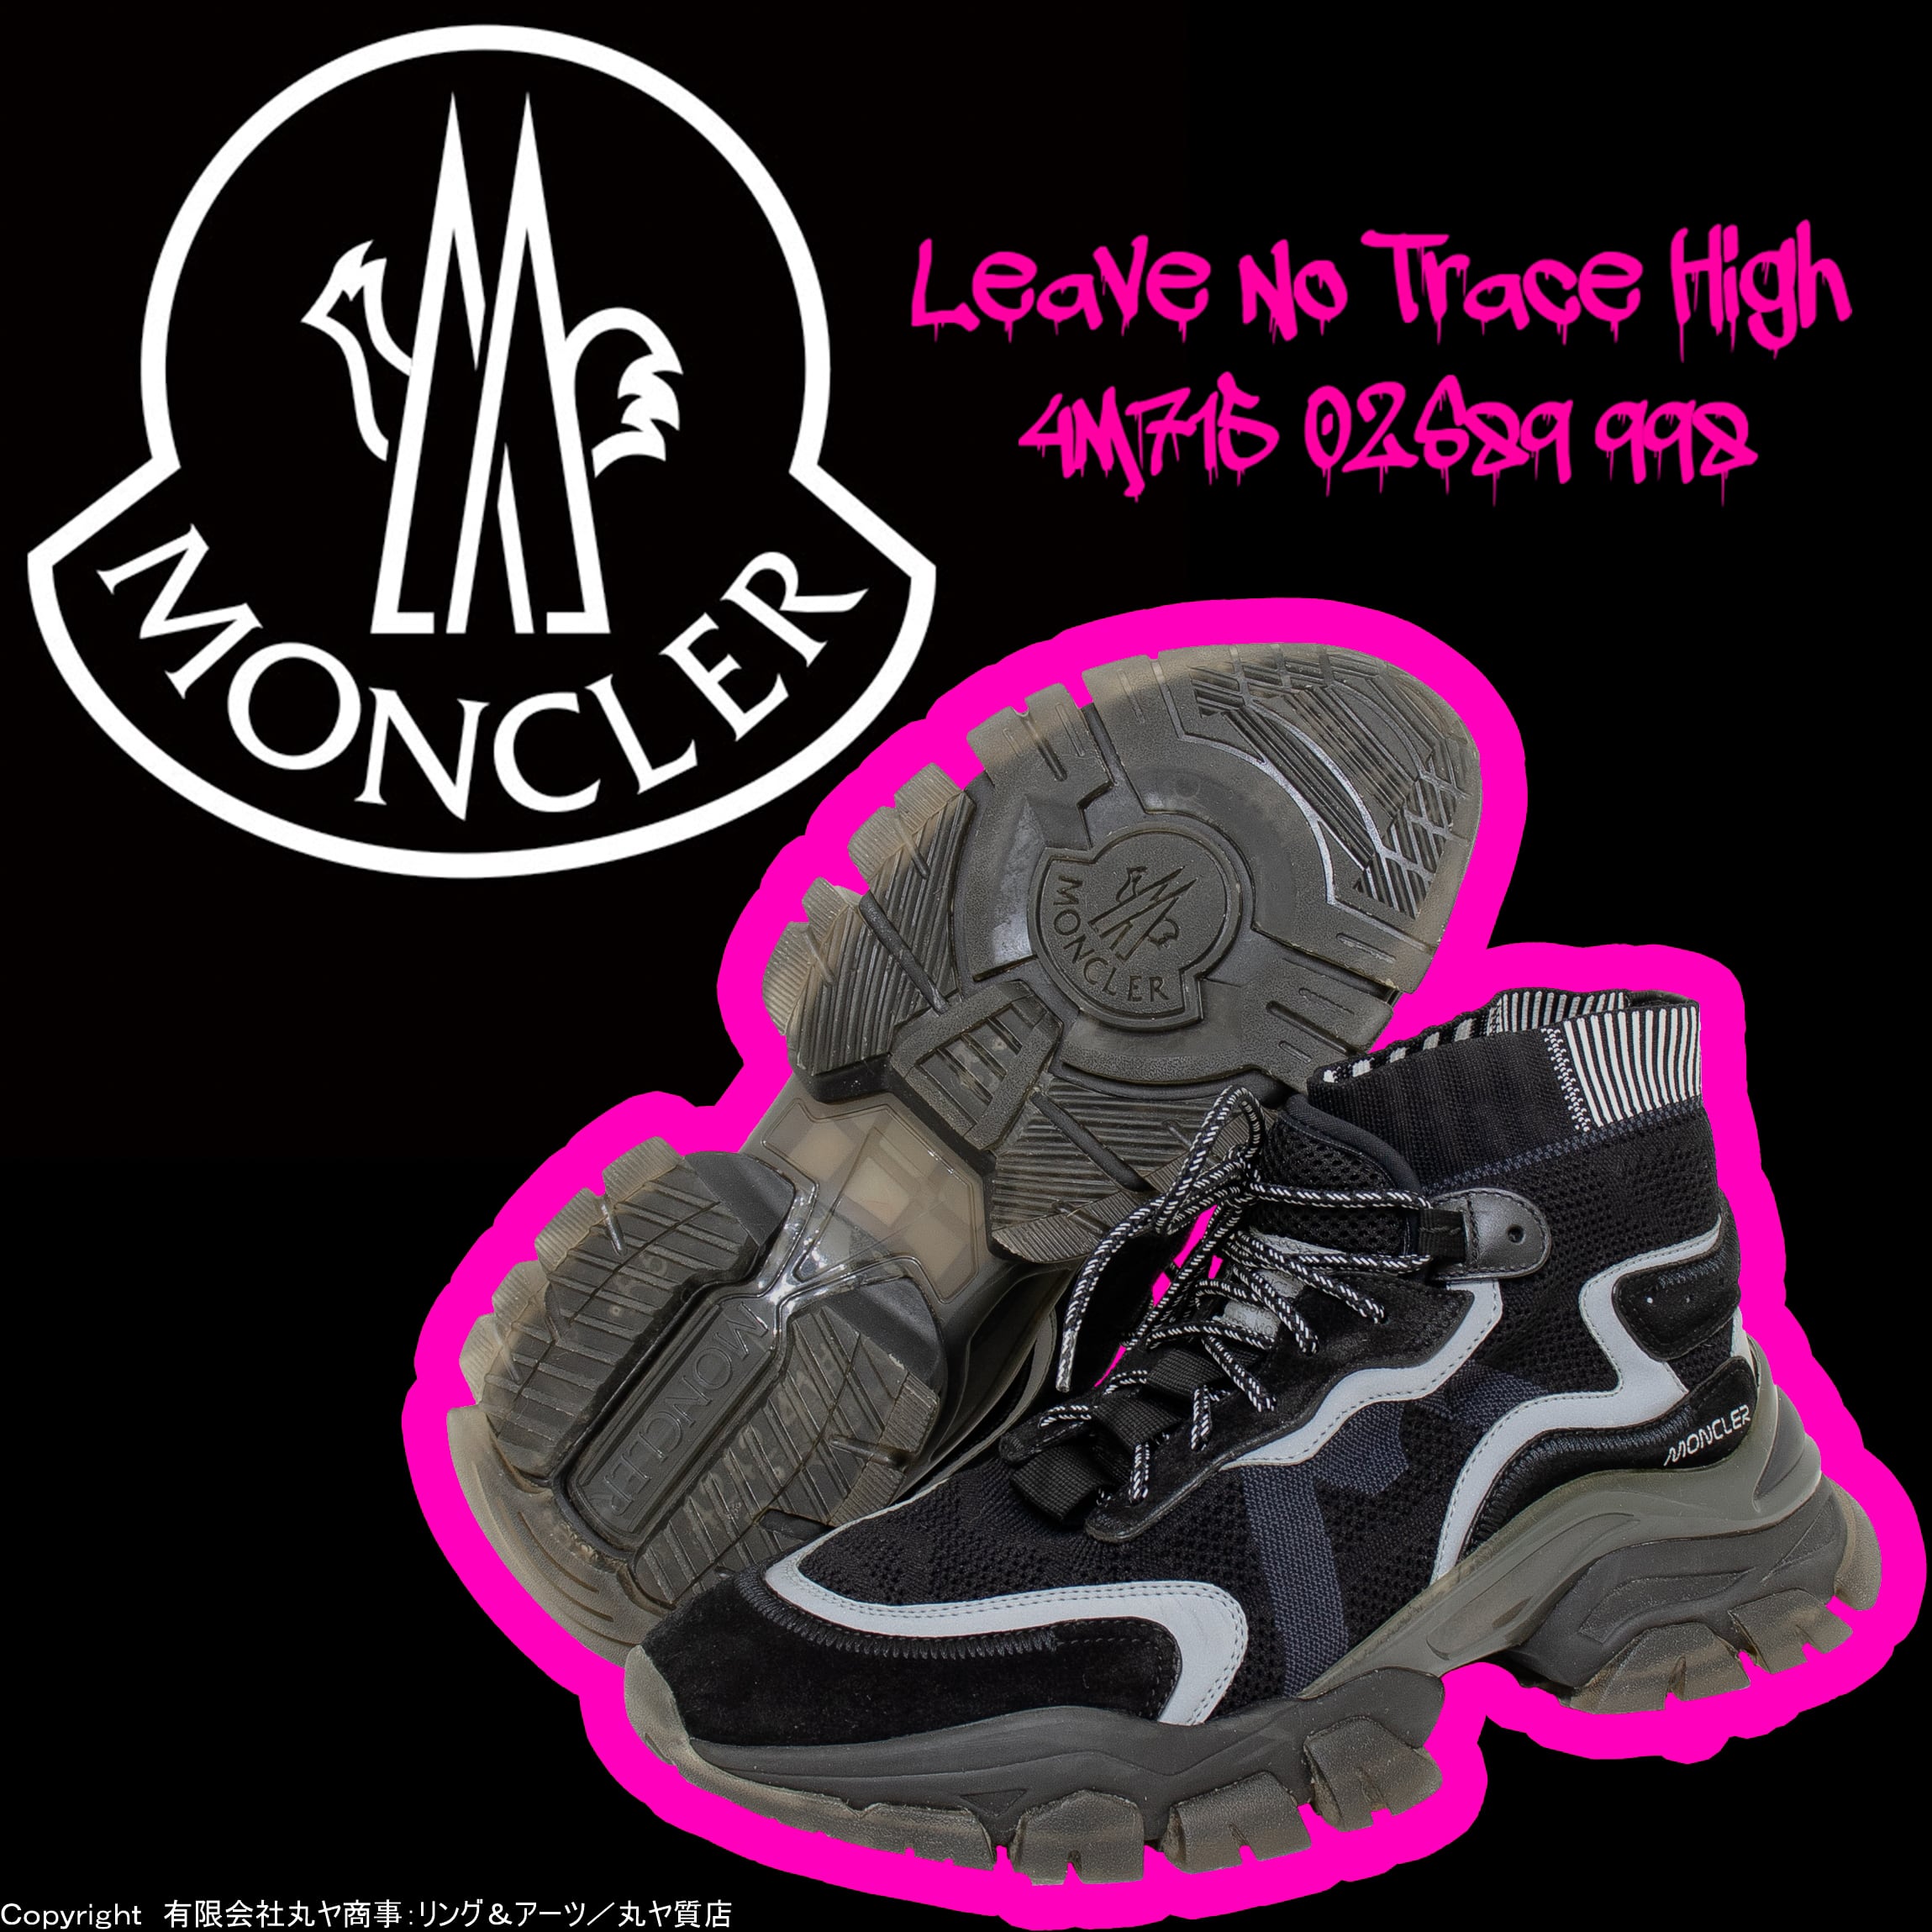 モンクレール moncler leave no trace sneaker